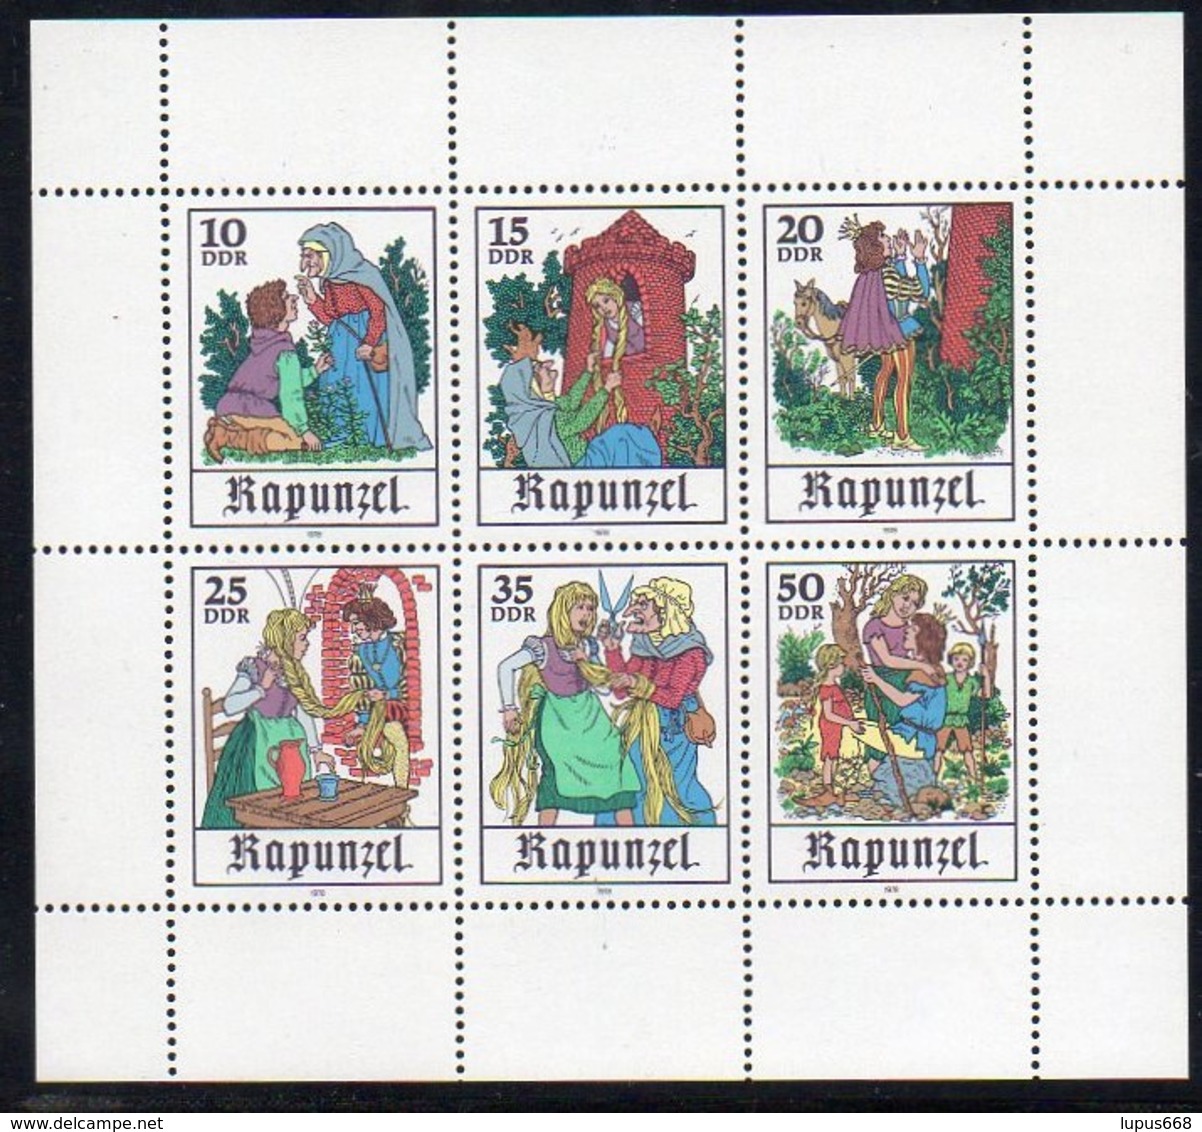 DDR 1978 MiNr. 2382/ 2387  ** /mnh ;  Kleinbogen Märchen: Rapunzel - Märchen, Sagen & Legenden